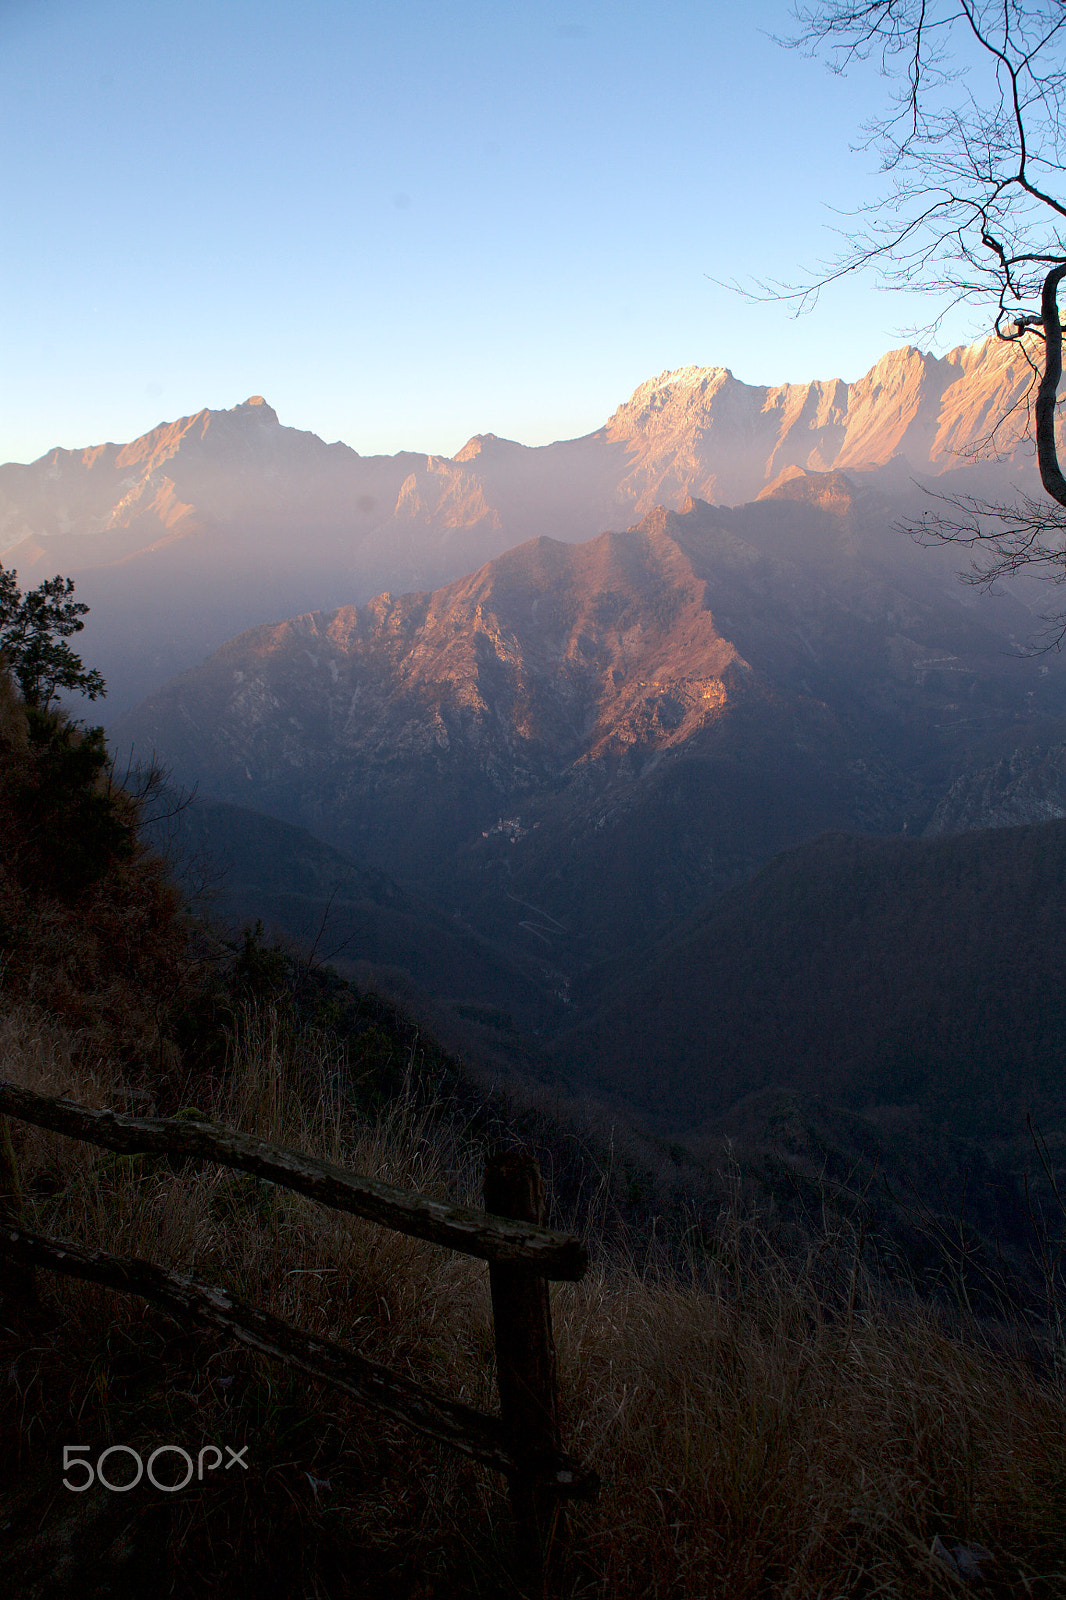 Canon EOS 5D sample photo. Apuane mountains landscape photography